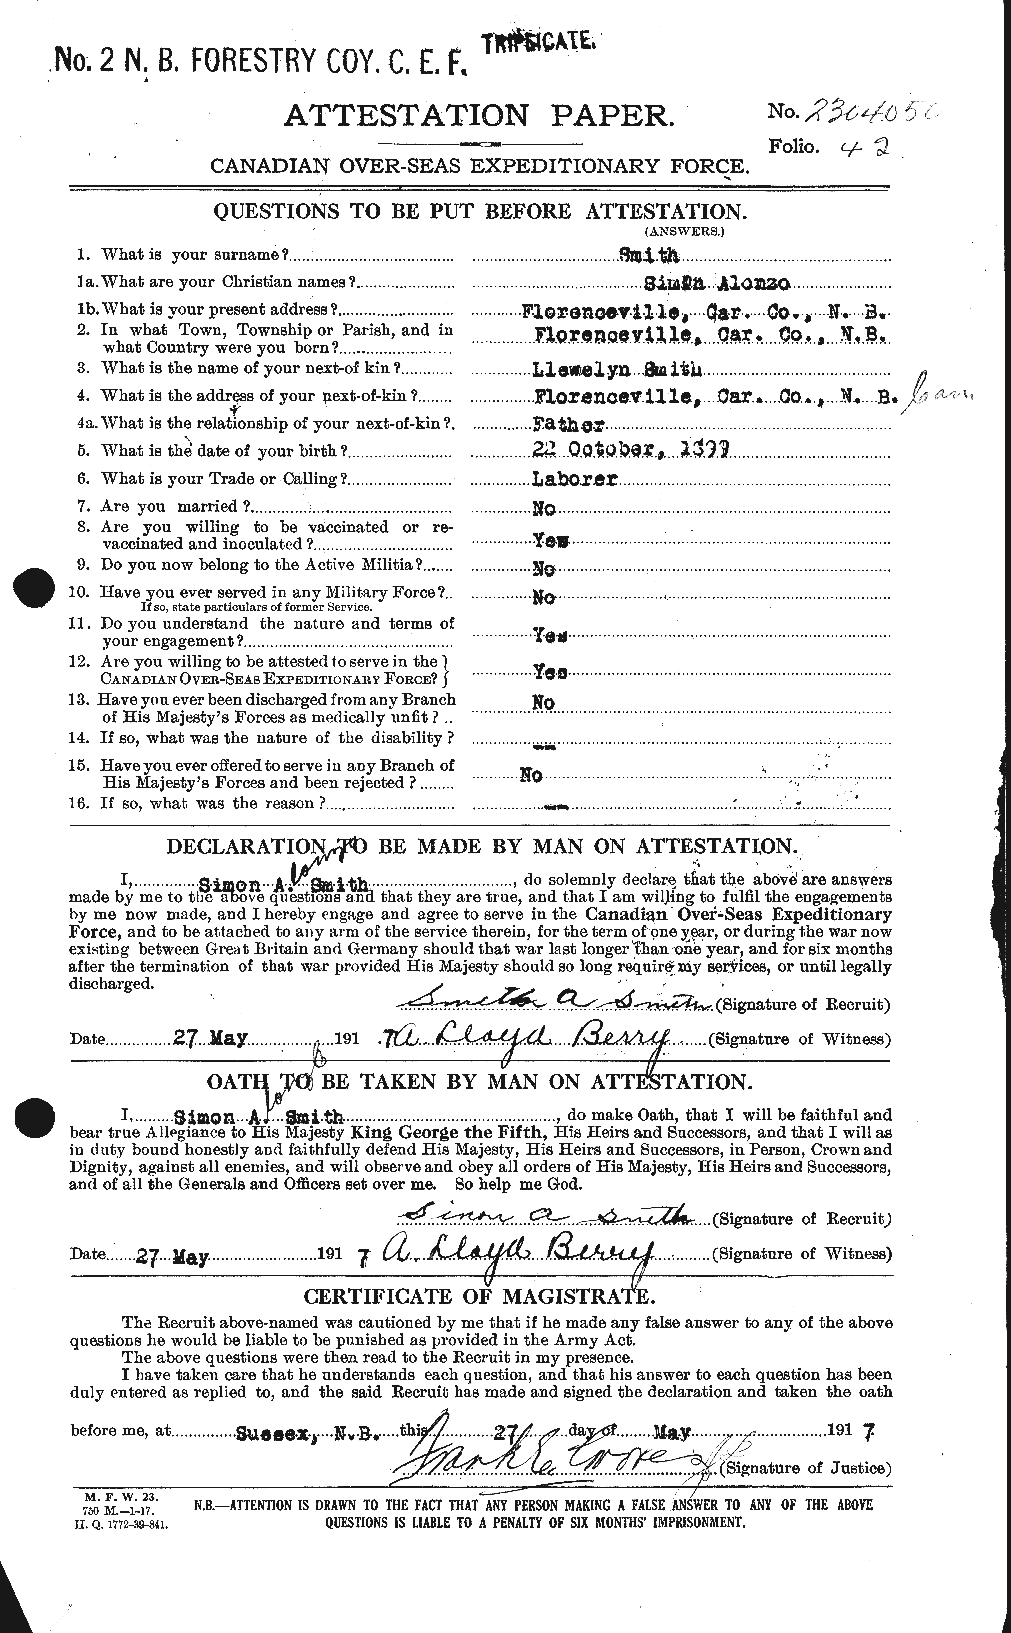 Dossiers du Personnel de la Première Guerre mondiale - CEC 107533a